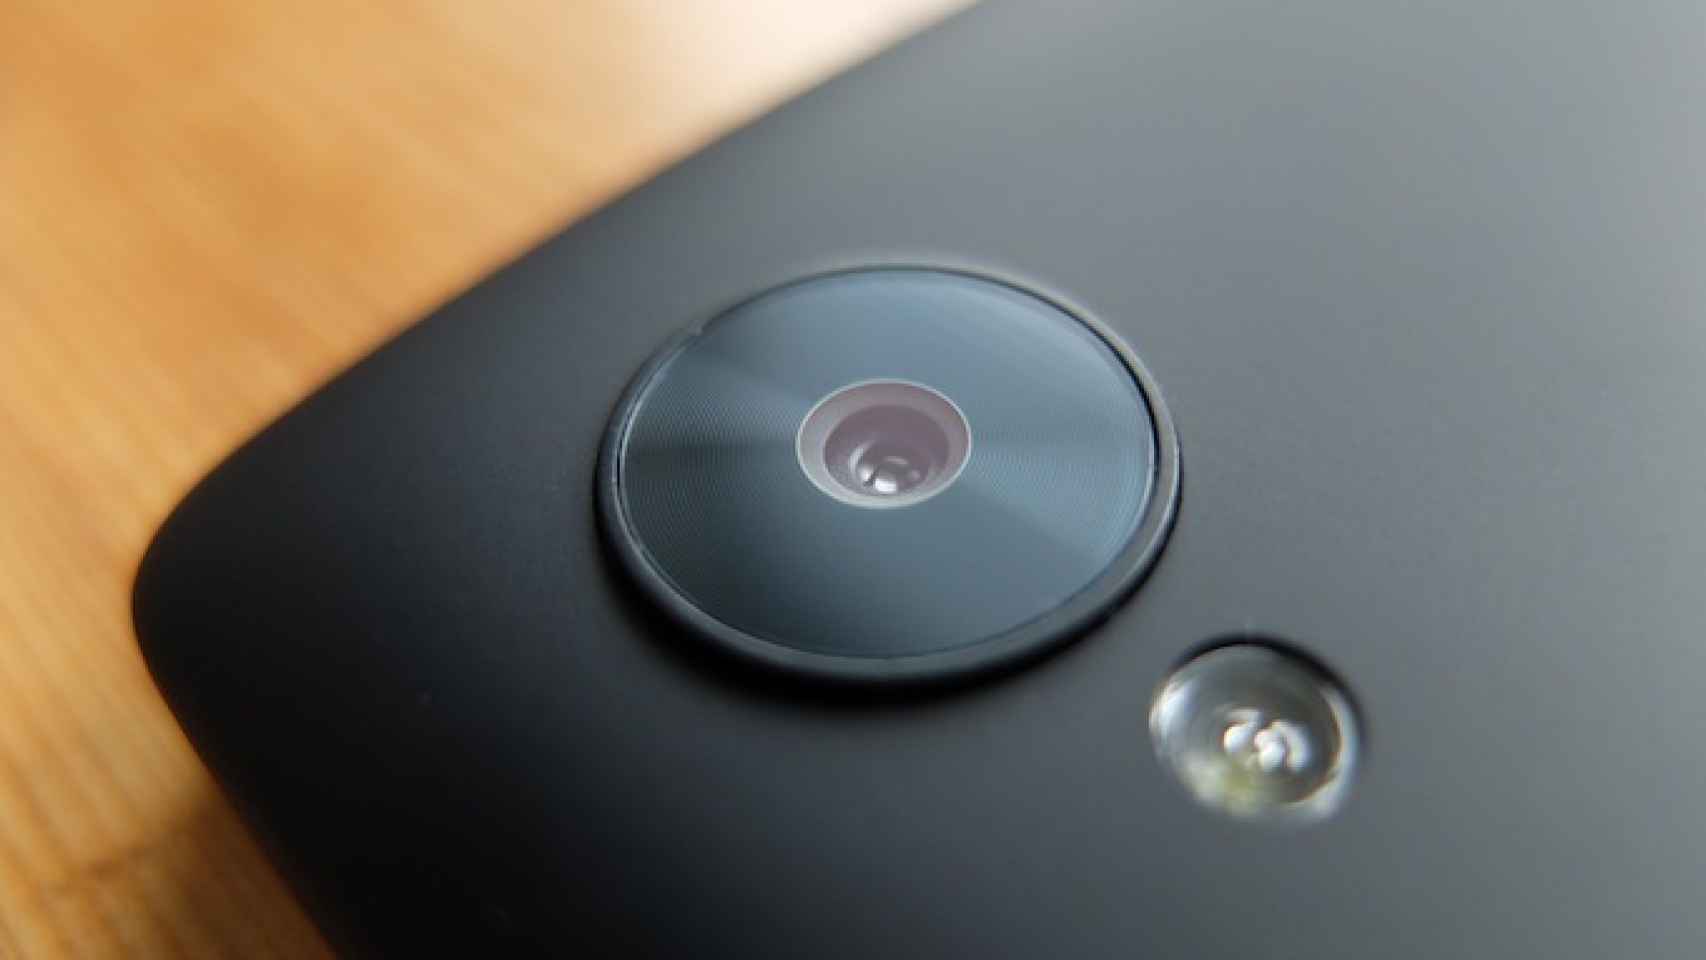 Nexus 5: Prueba a fondo de la cámara y comparación con Note 3, Xperia Z1 y iPod Touch